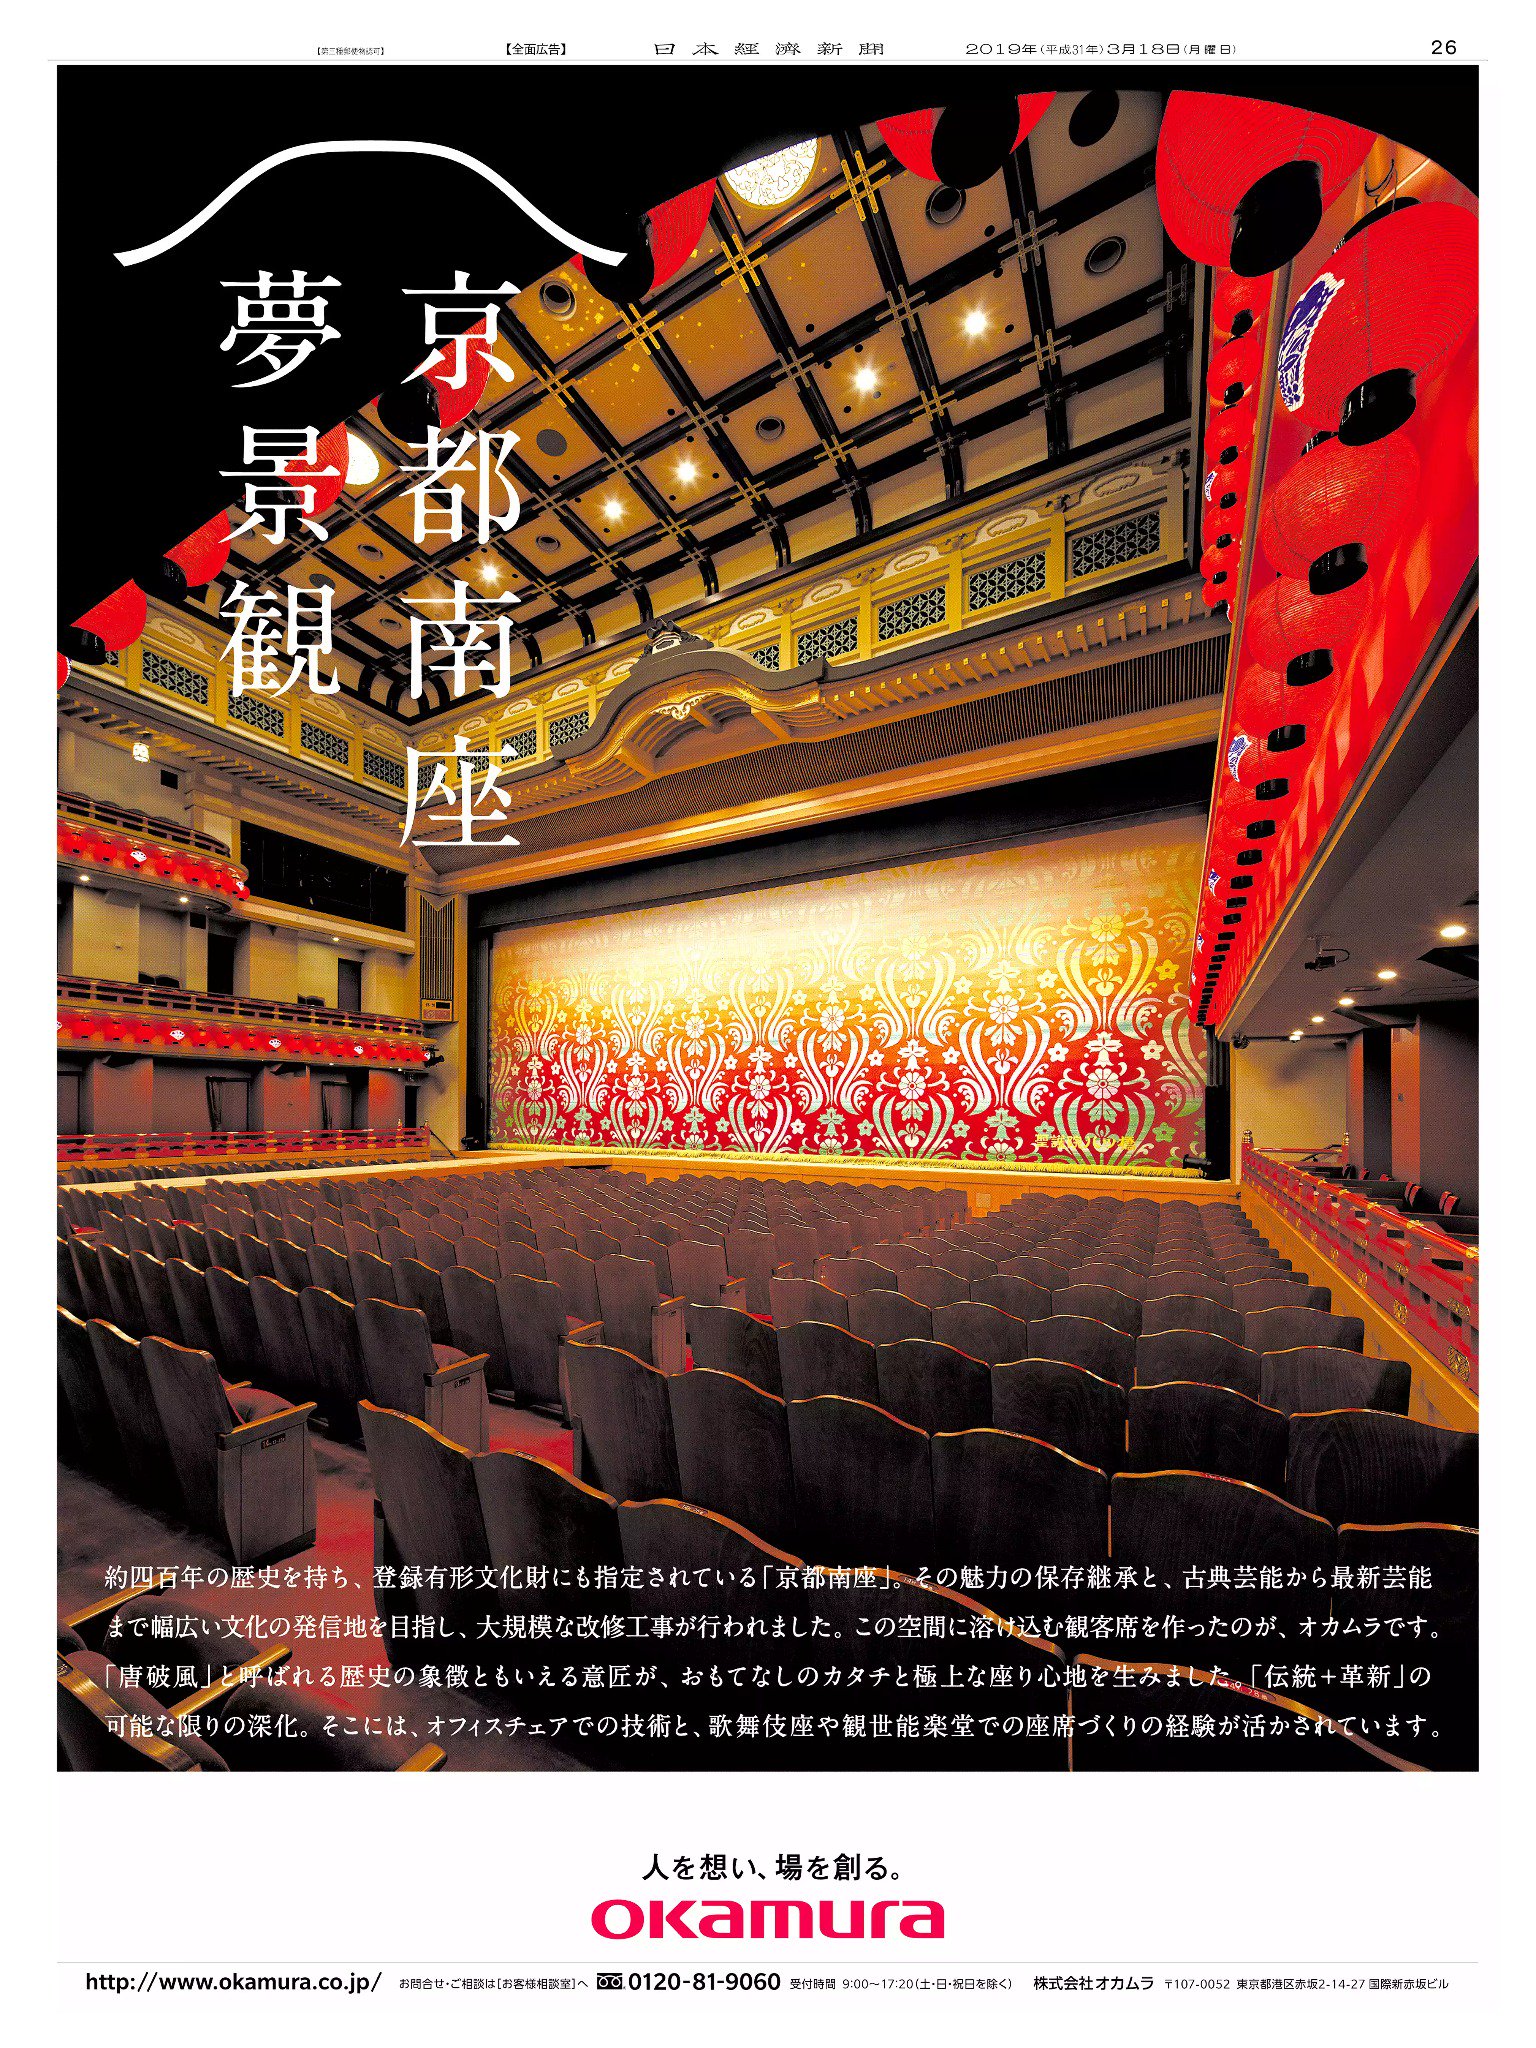 Nikkei Brand Voice On Twitter 3 18掲載のオカムラの広告は 約400年の歴史を持つ 京都南座 の大改修で 同社が観客席を手掛けたことを伝えています 波模様の背もたれが伝統空間に美しく映えます 日経新聞 新聞広告 オカムラ